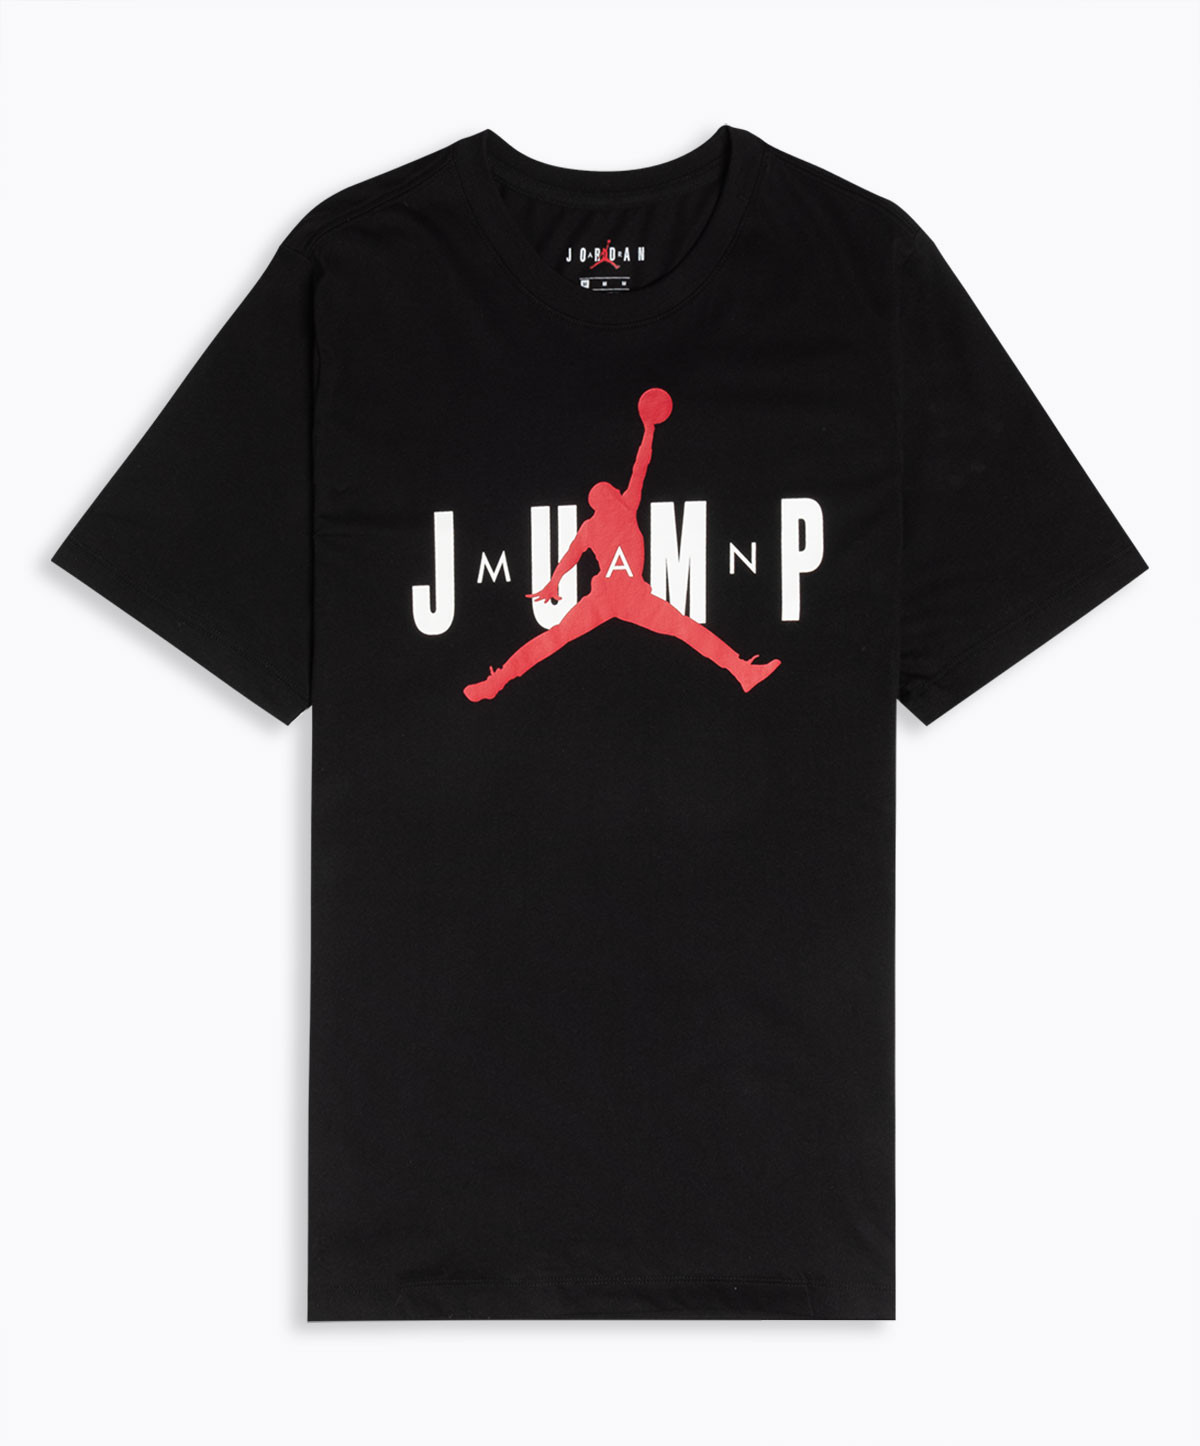 50% OFF the Air Jordan Jump T-shirt 